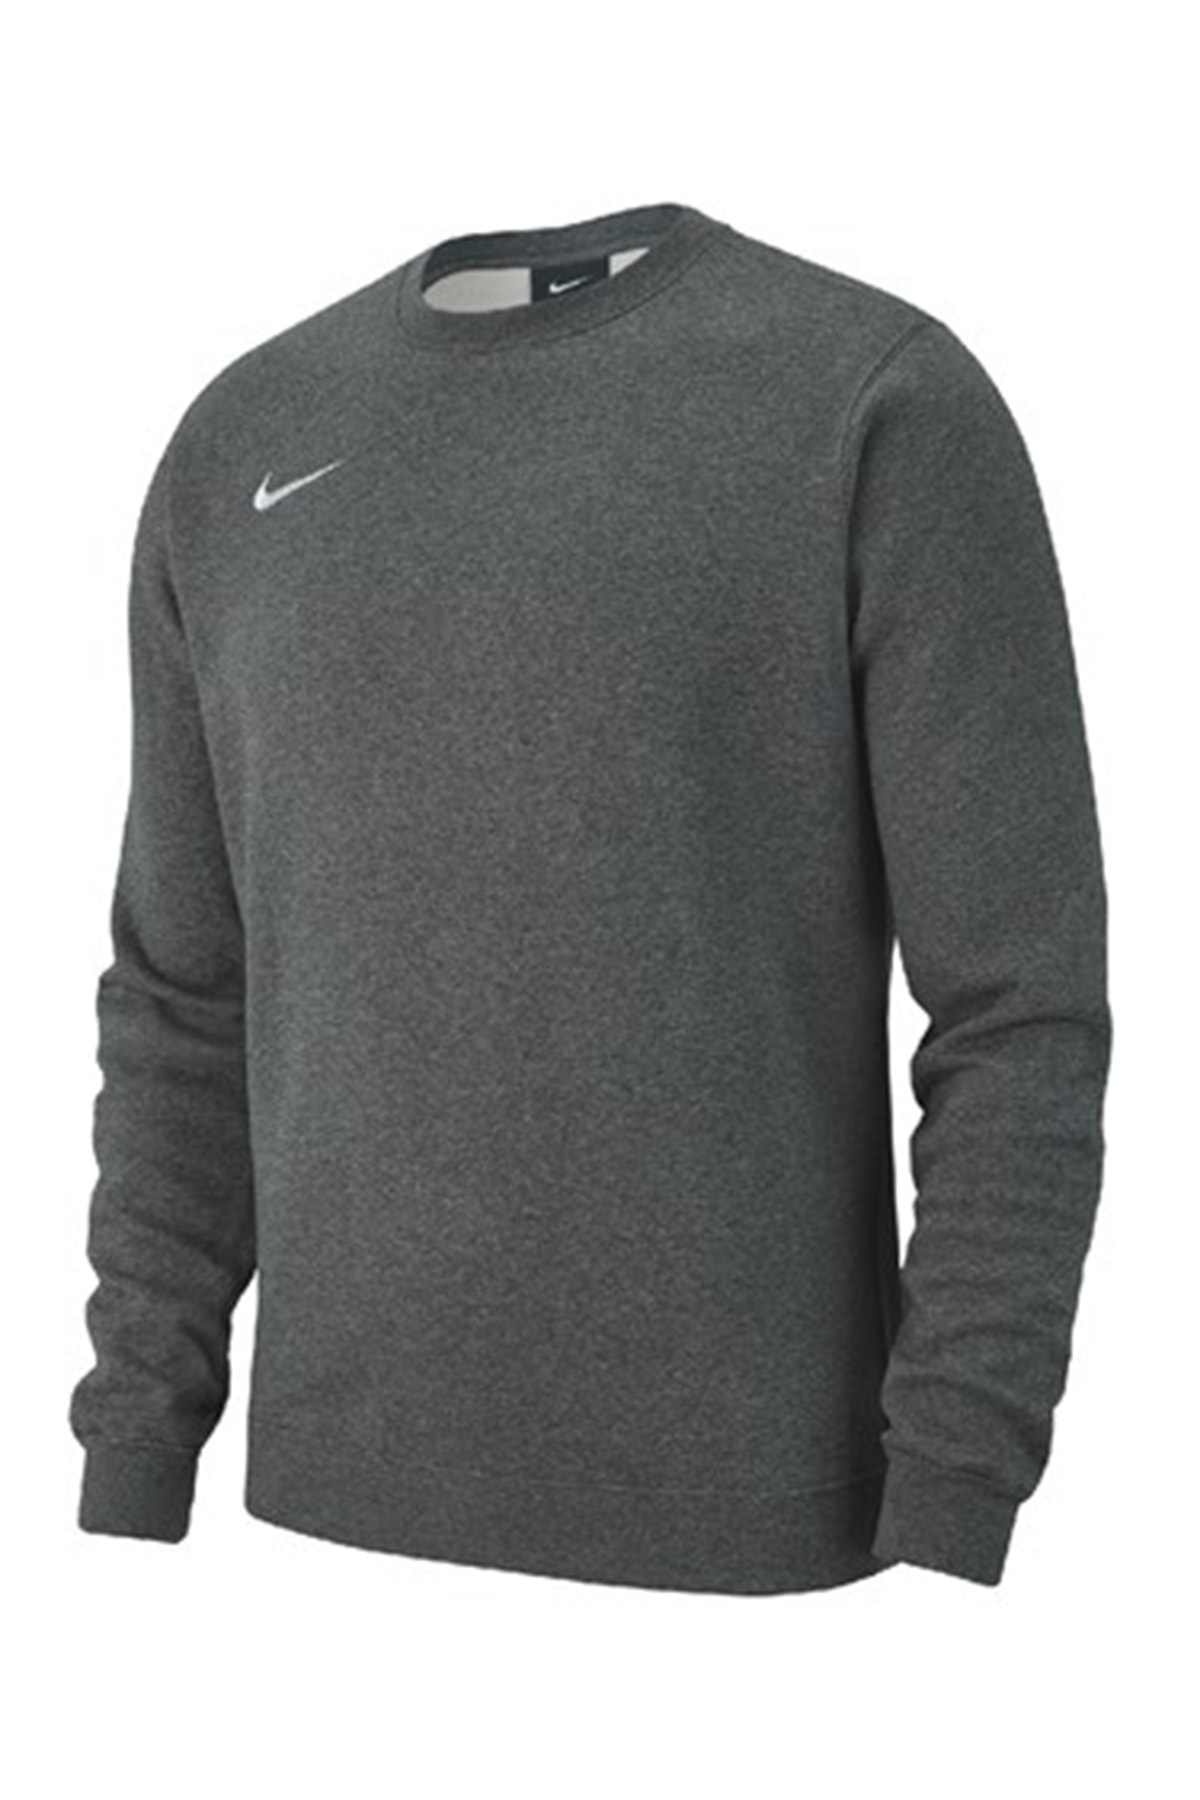 Nike Erkek Sweatshirt - AJ1466-071-L